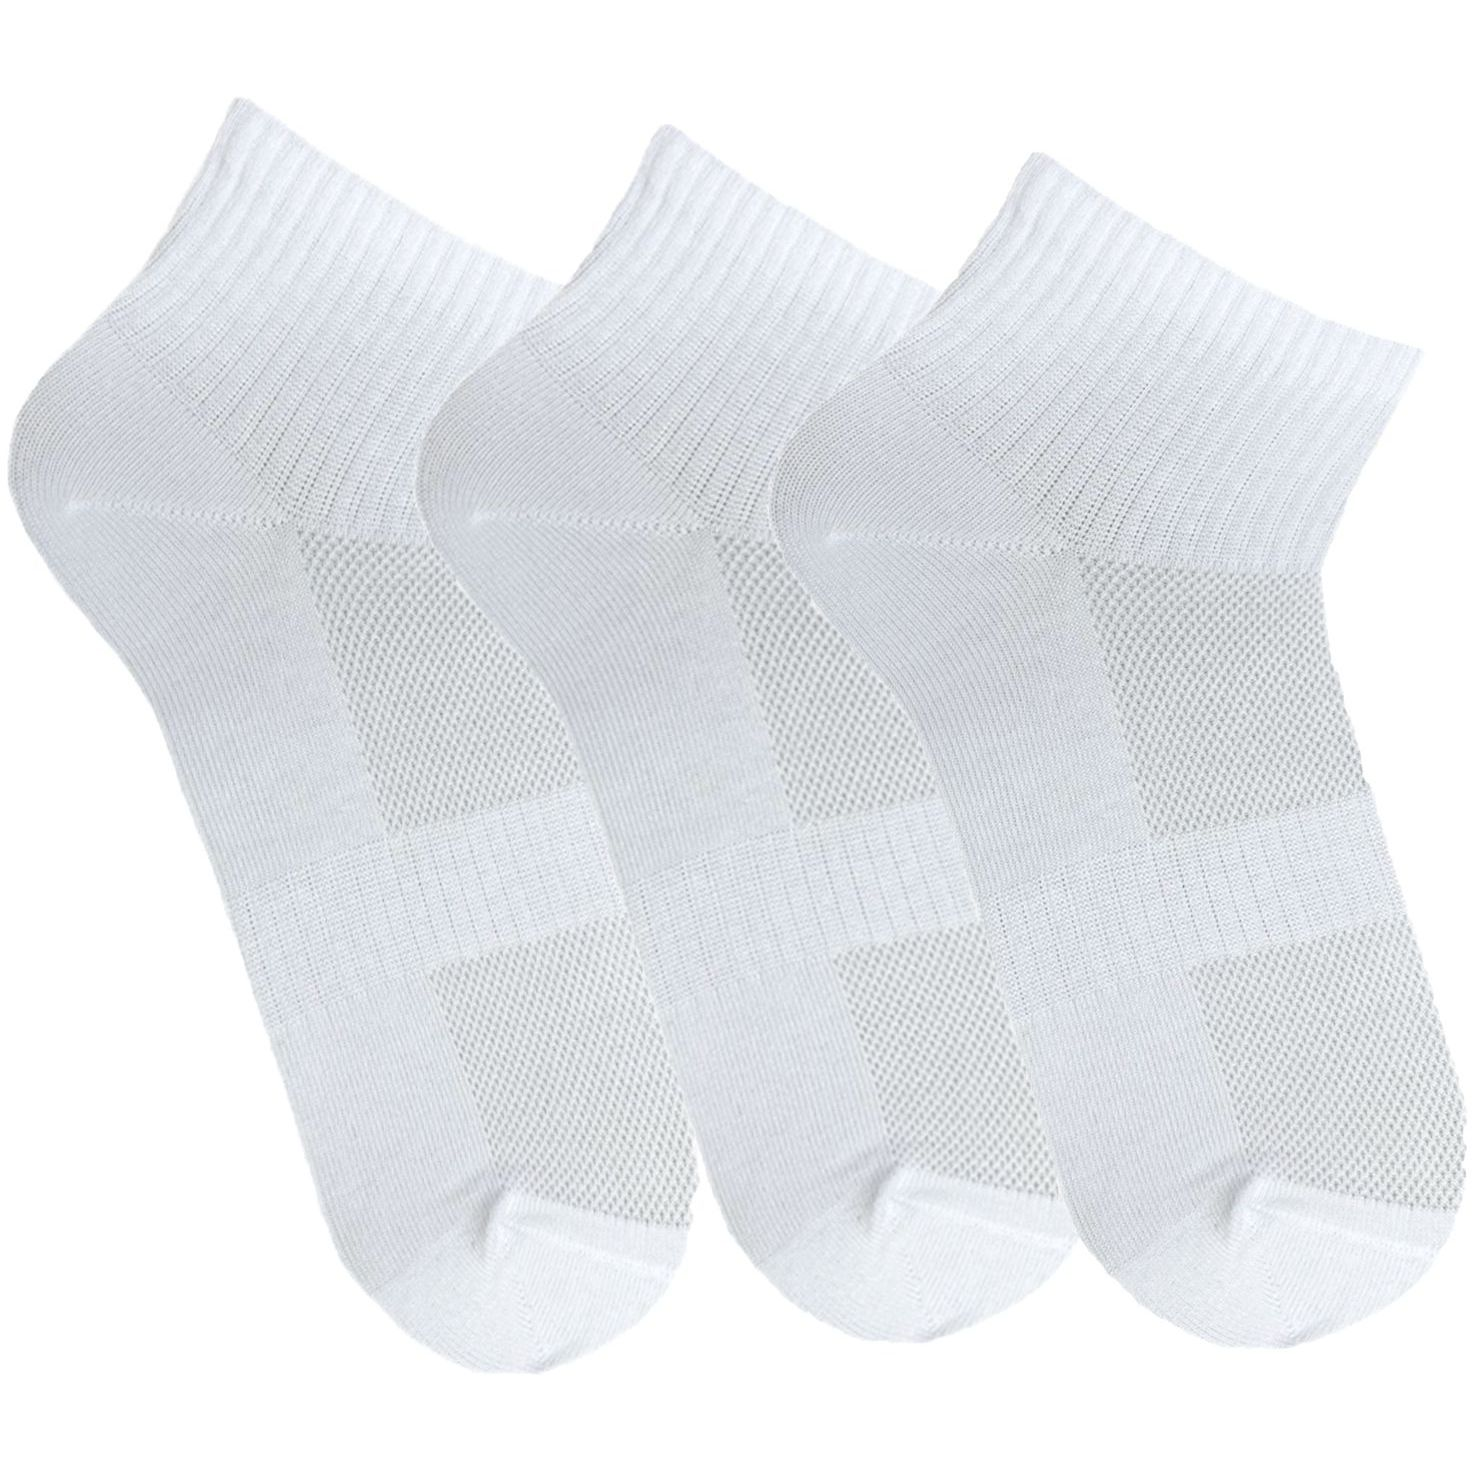 Набор носков женских Premier Socks 36-40 3 пары белые (4820163319223) фото 1